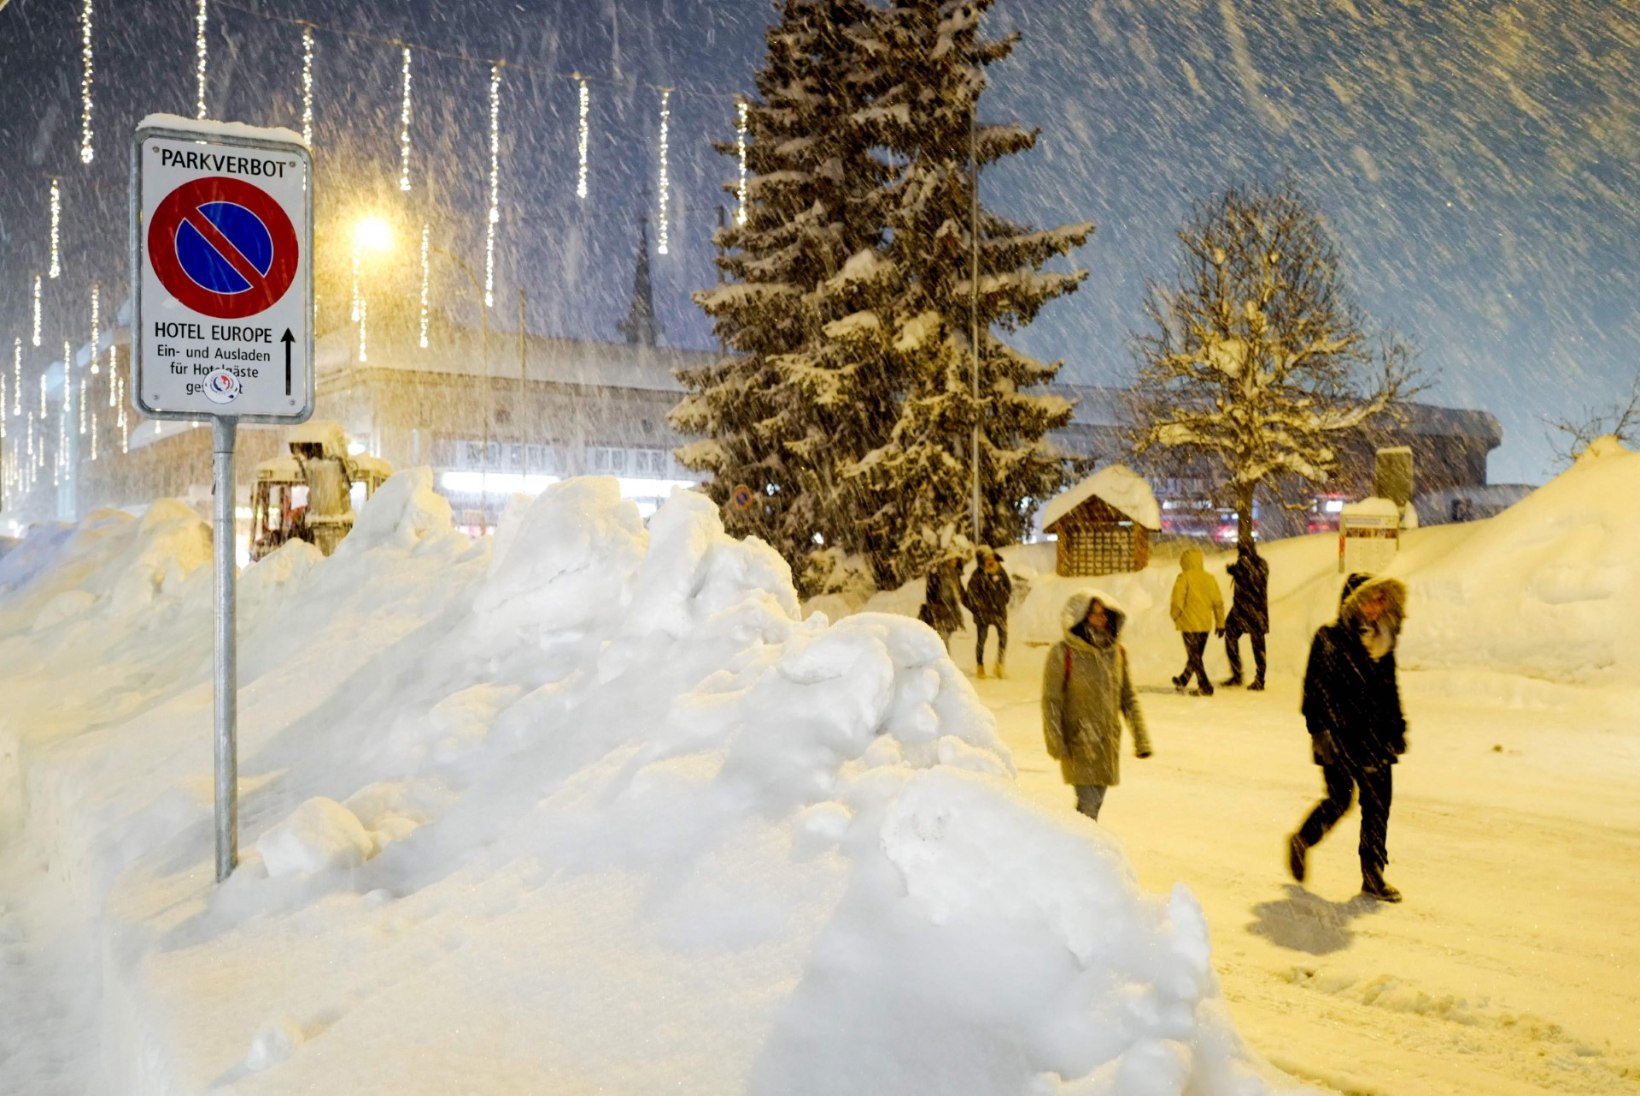 Eestlasest lumevang Austrias: kui ajakirjandust ei loe, ei teagi, et oled lõksus